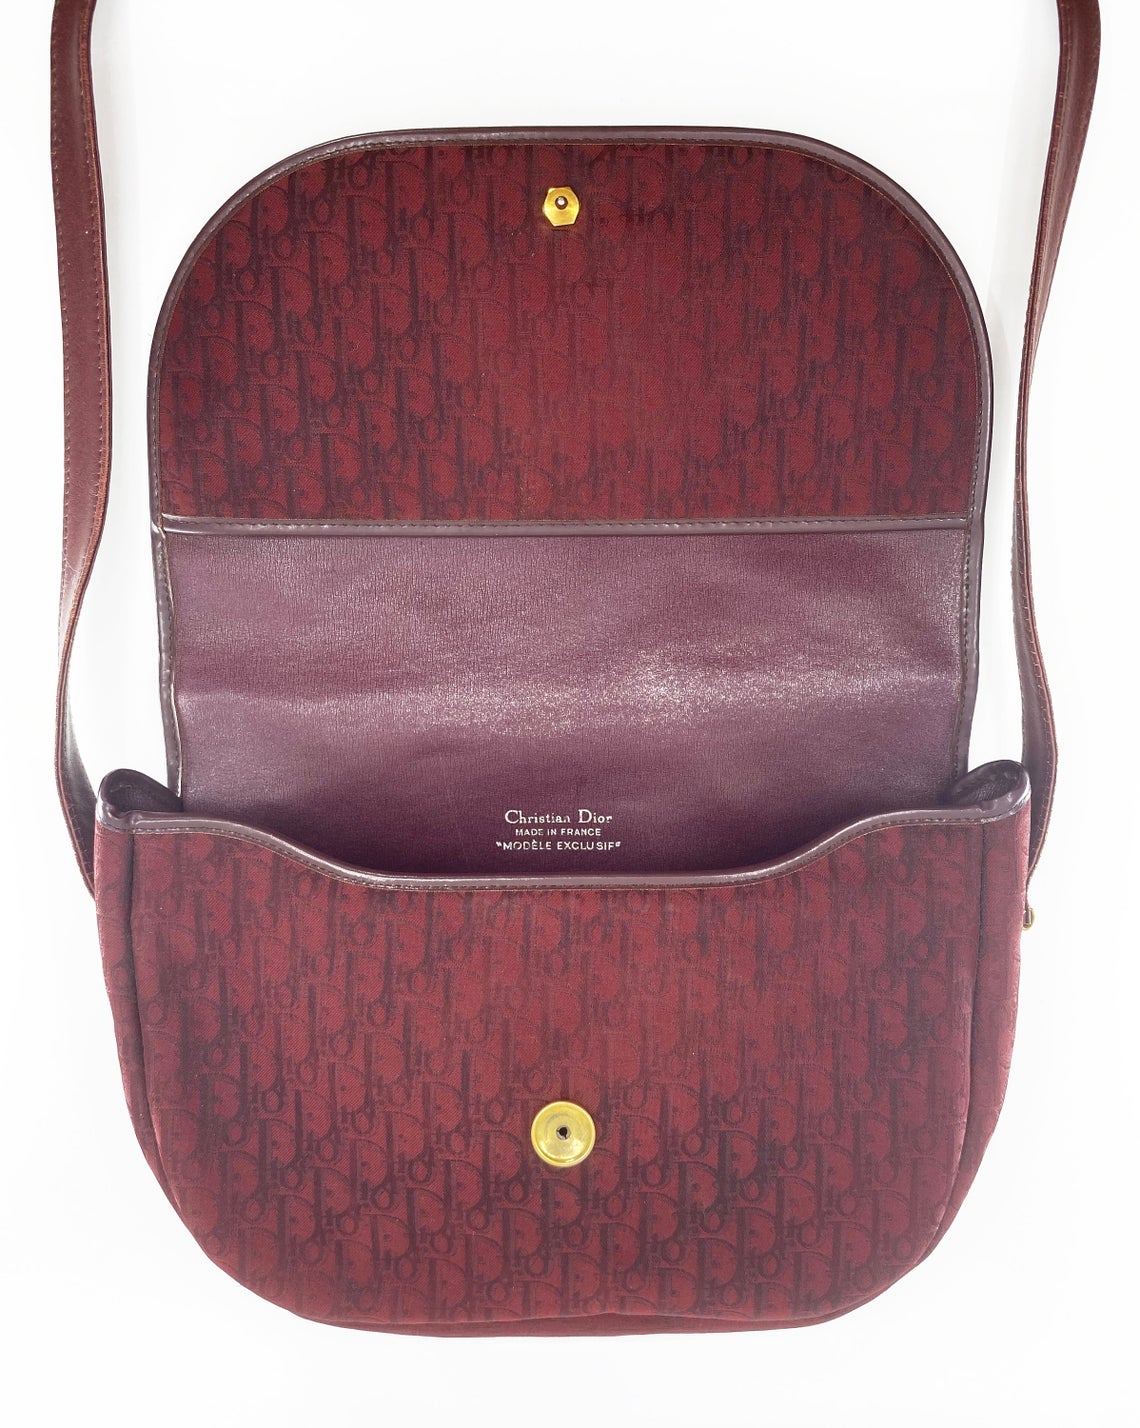 FRUIT Vintage Christian Dior 1980s maroon monogram logo shoulder bag handbag. 